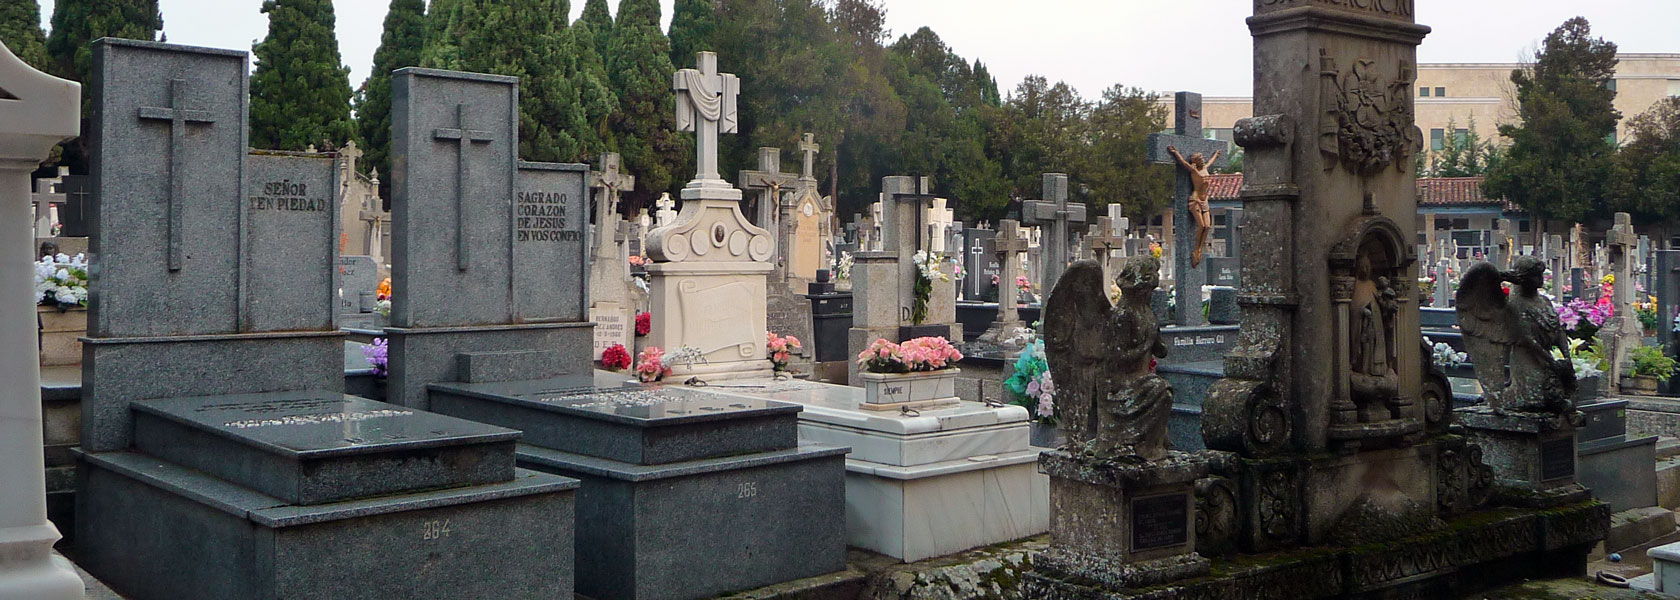 Ein Friedhof in Spanien